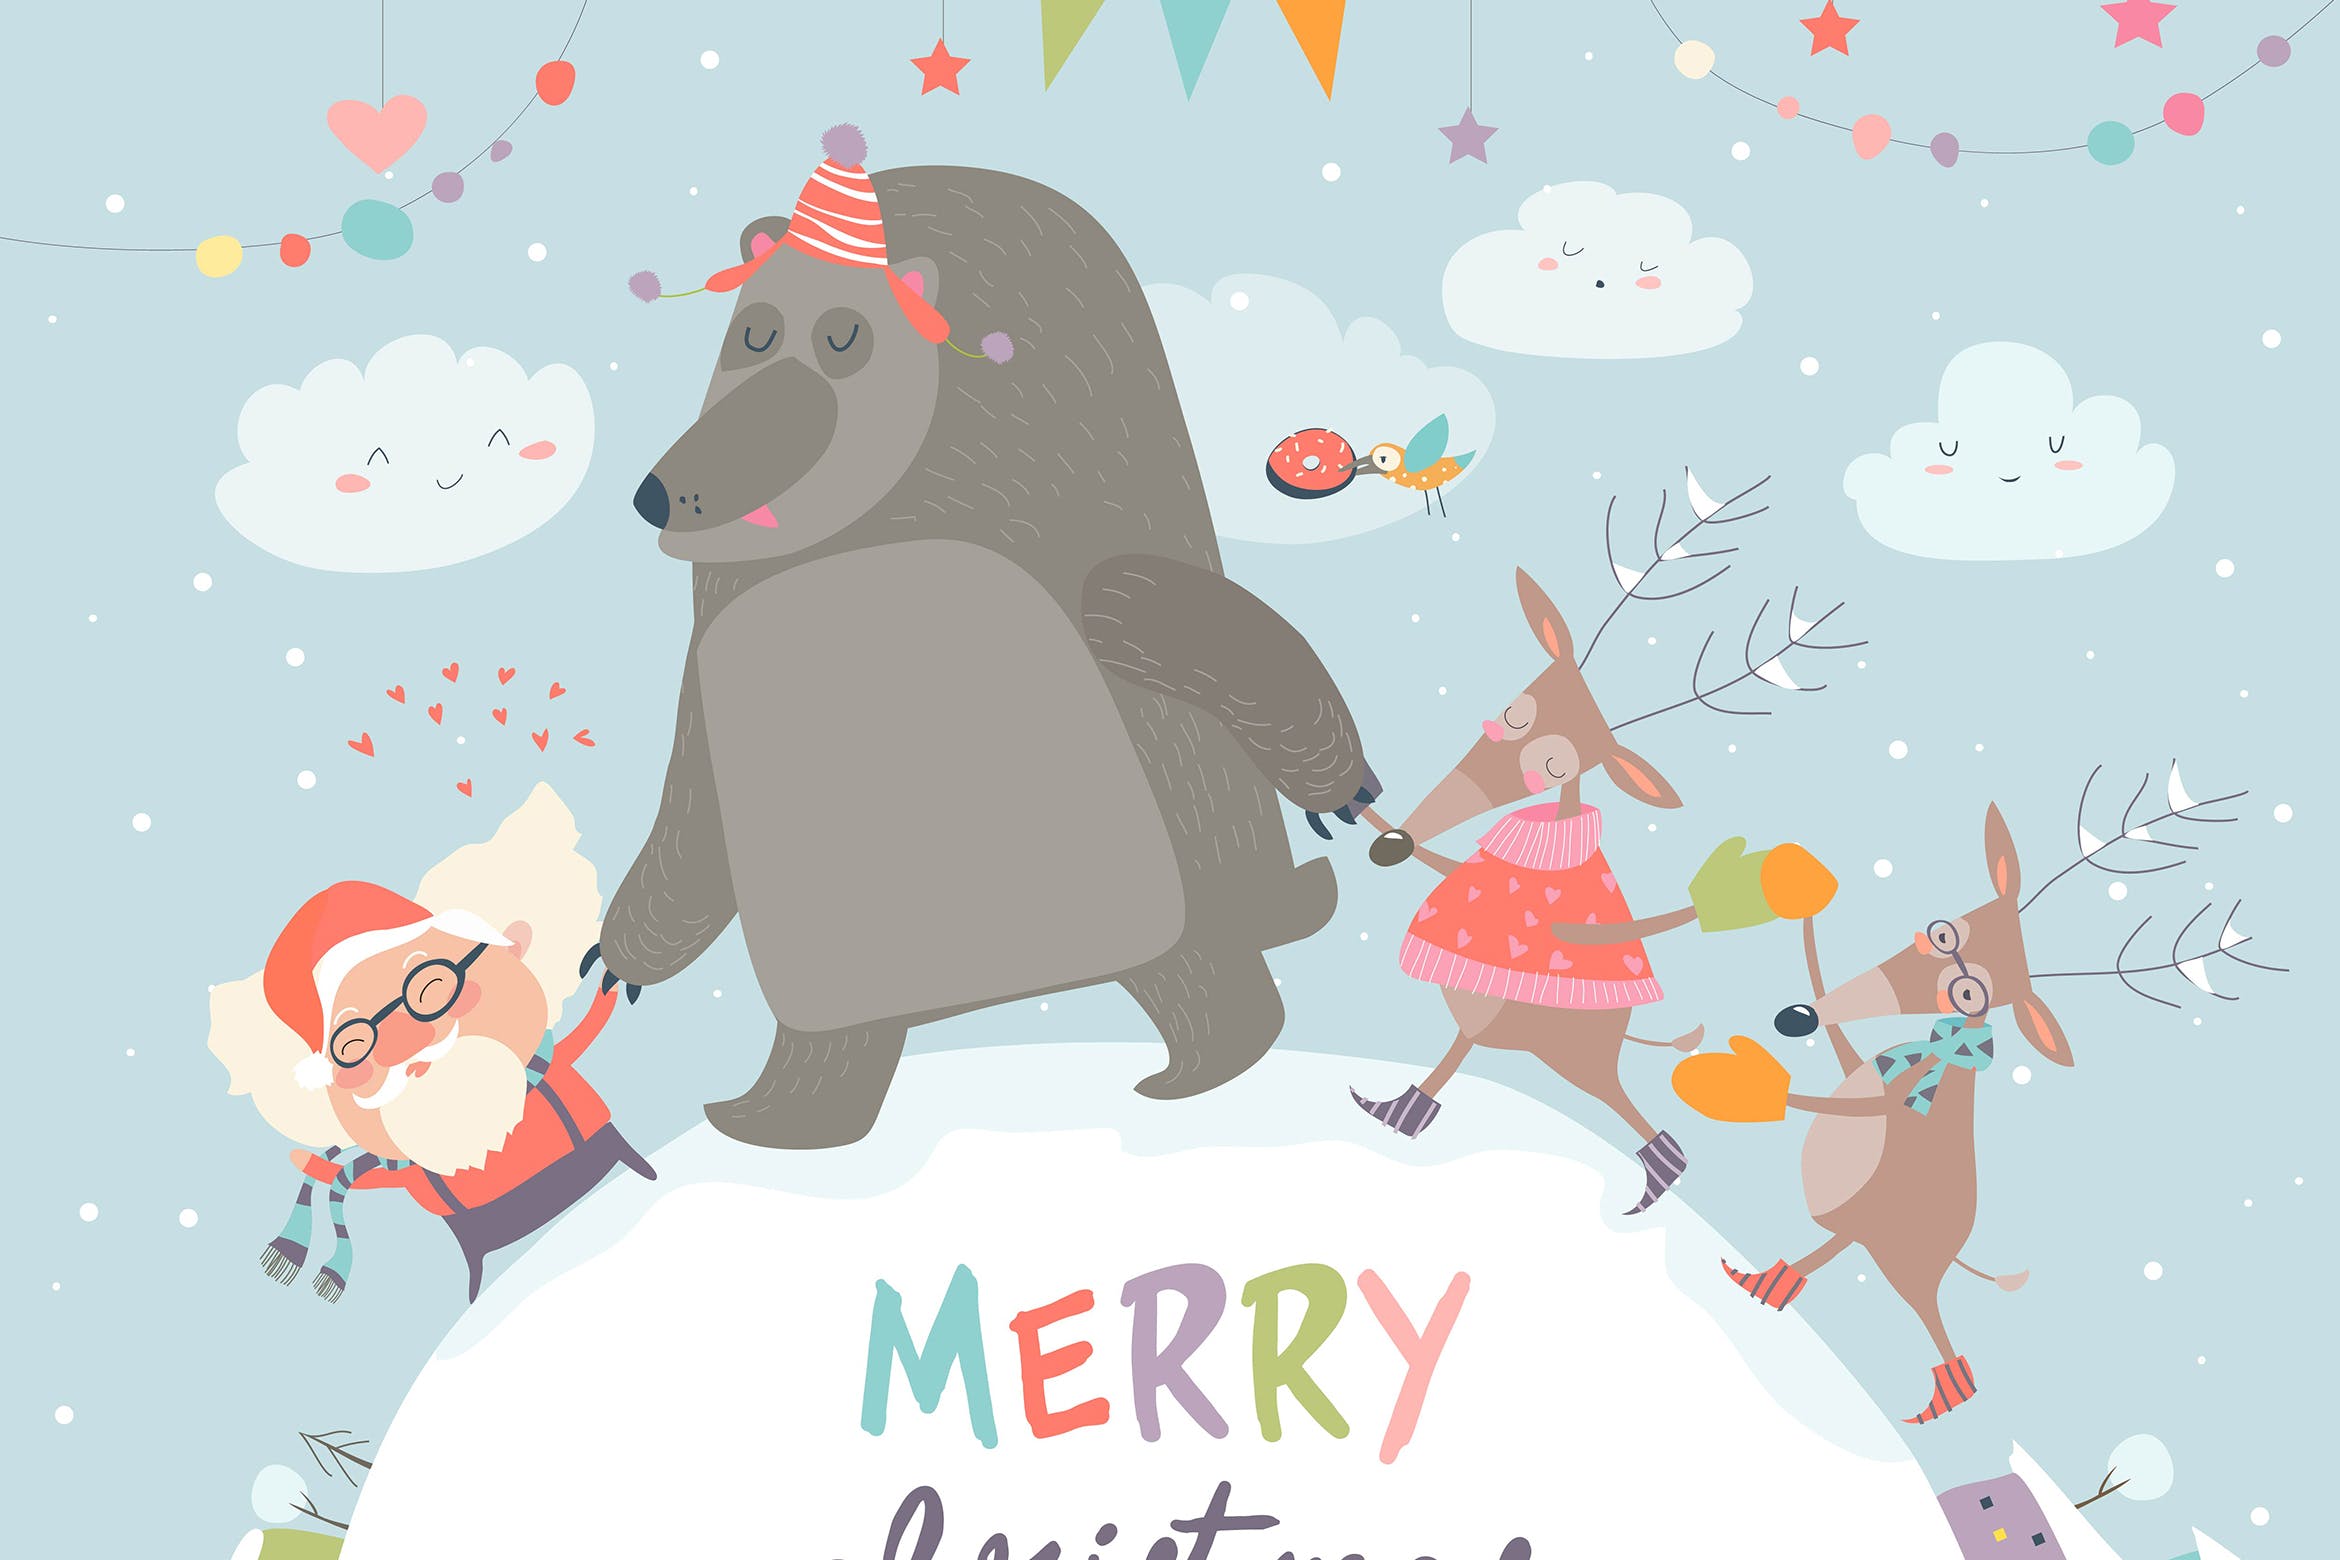 圣诞老人/驯鹿/熊圣诞节主题矢量手绘素材 Santa ,reindeers and bear celebrating Christmas插图